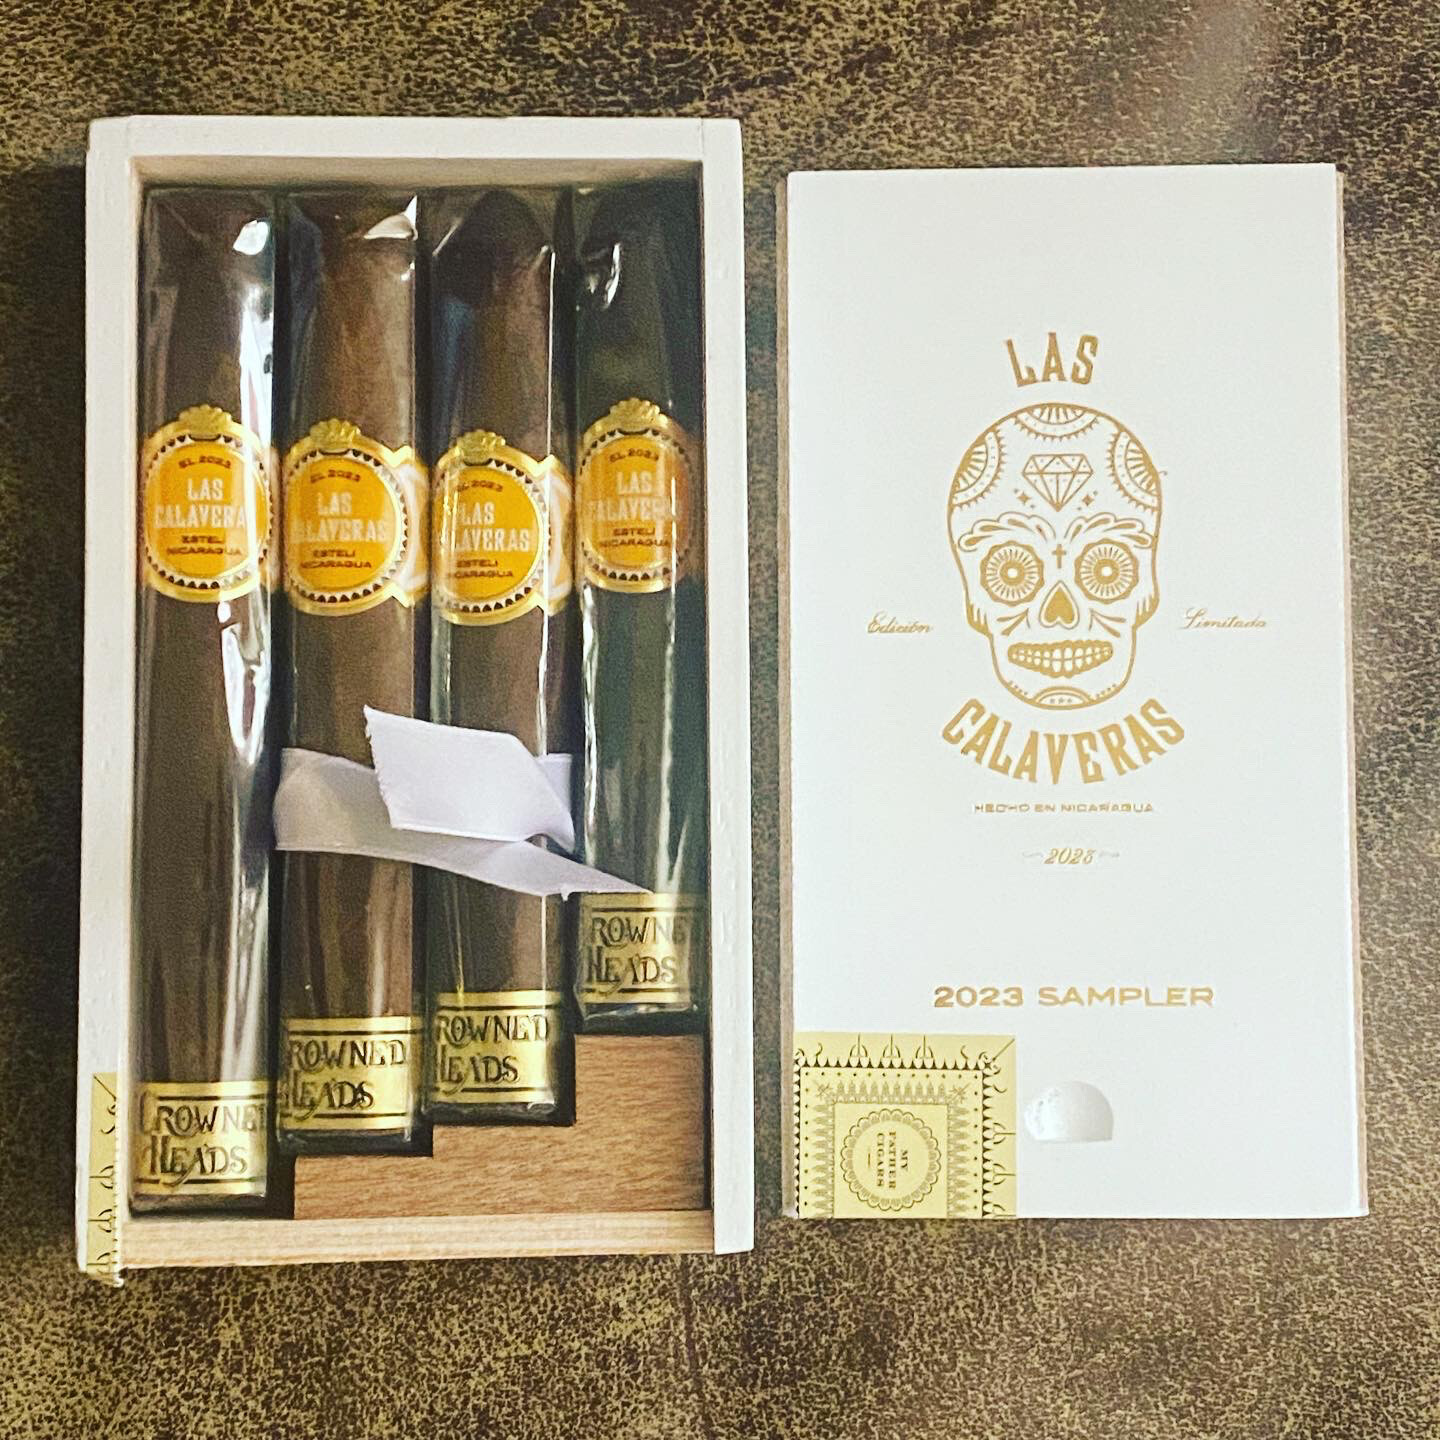 Las Calaveras Edicion Limitada 2023, Sampler, Box of 4 Cigars